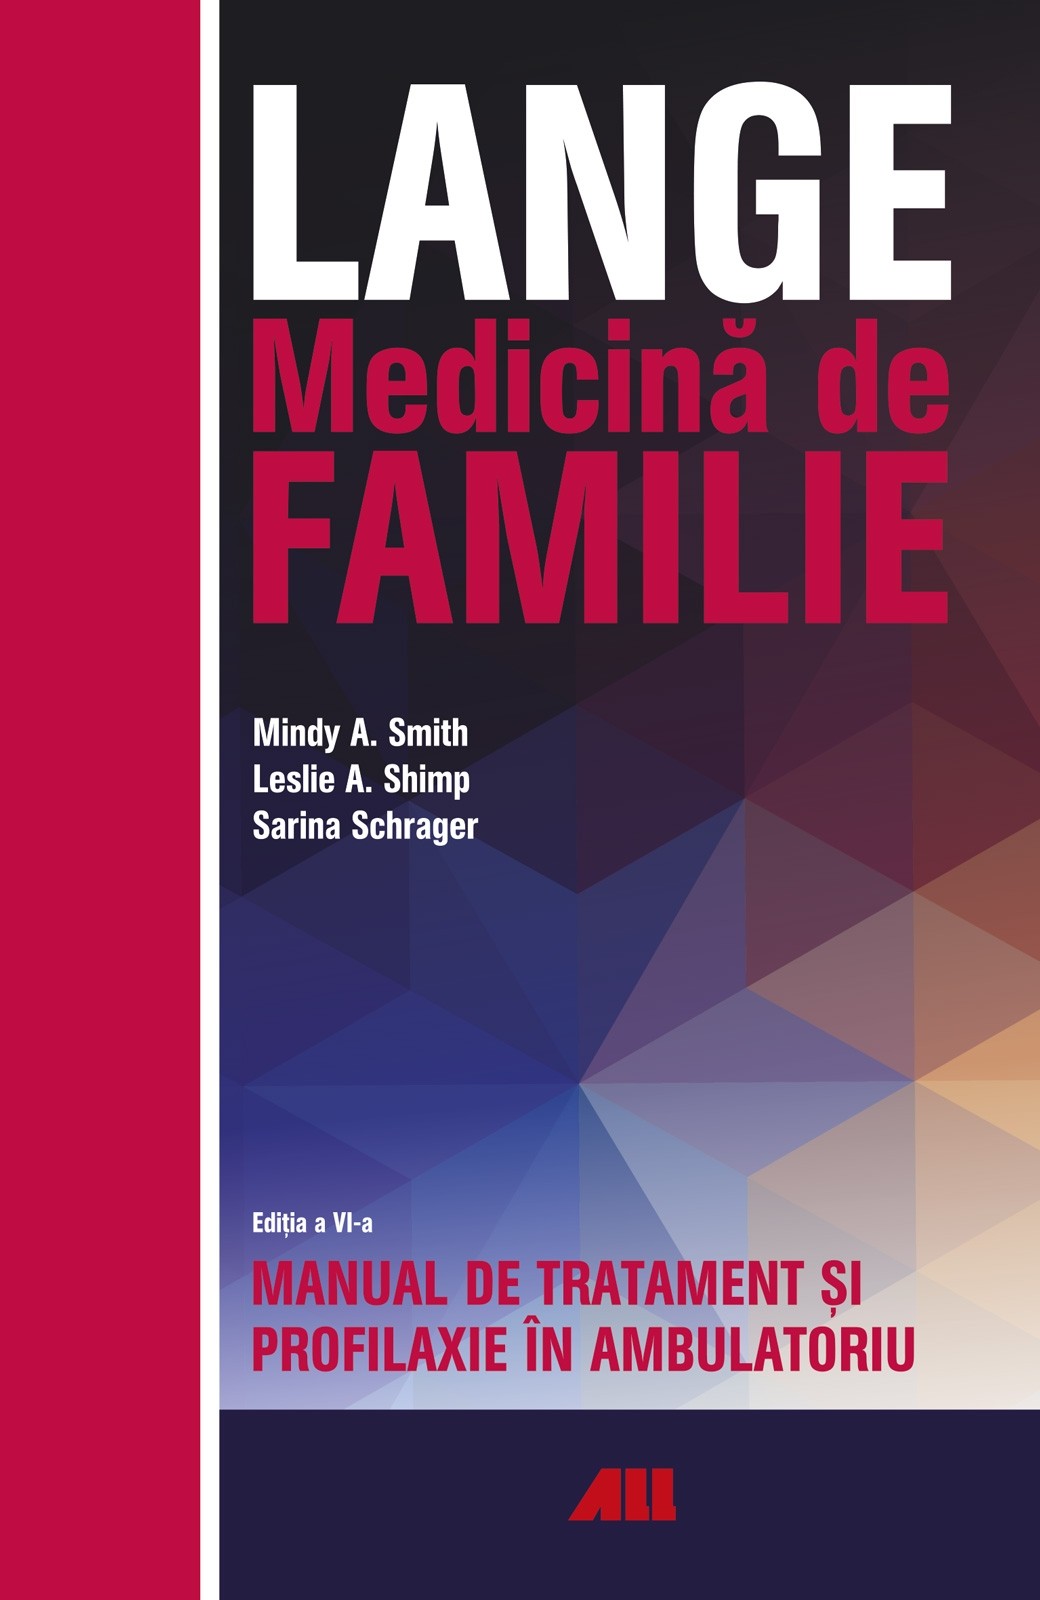 LANGE. Medicina de familie | Leslie A. Shimp, Mindy A. Smith, Sarina Schrager ALL imagine 2022